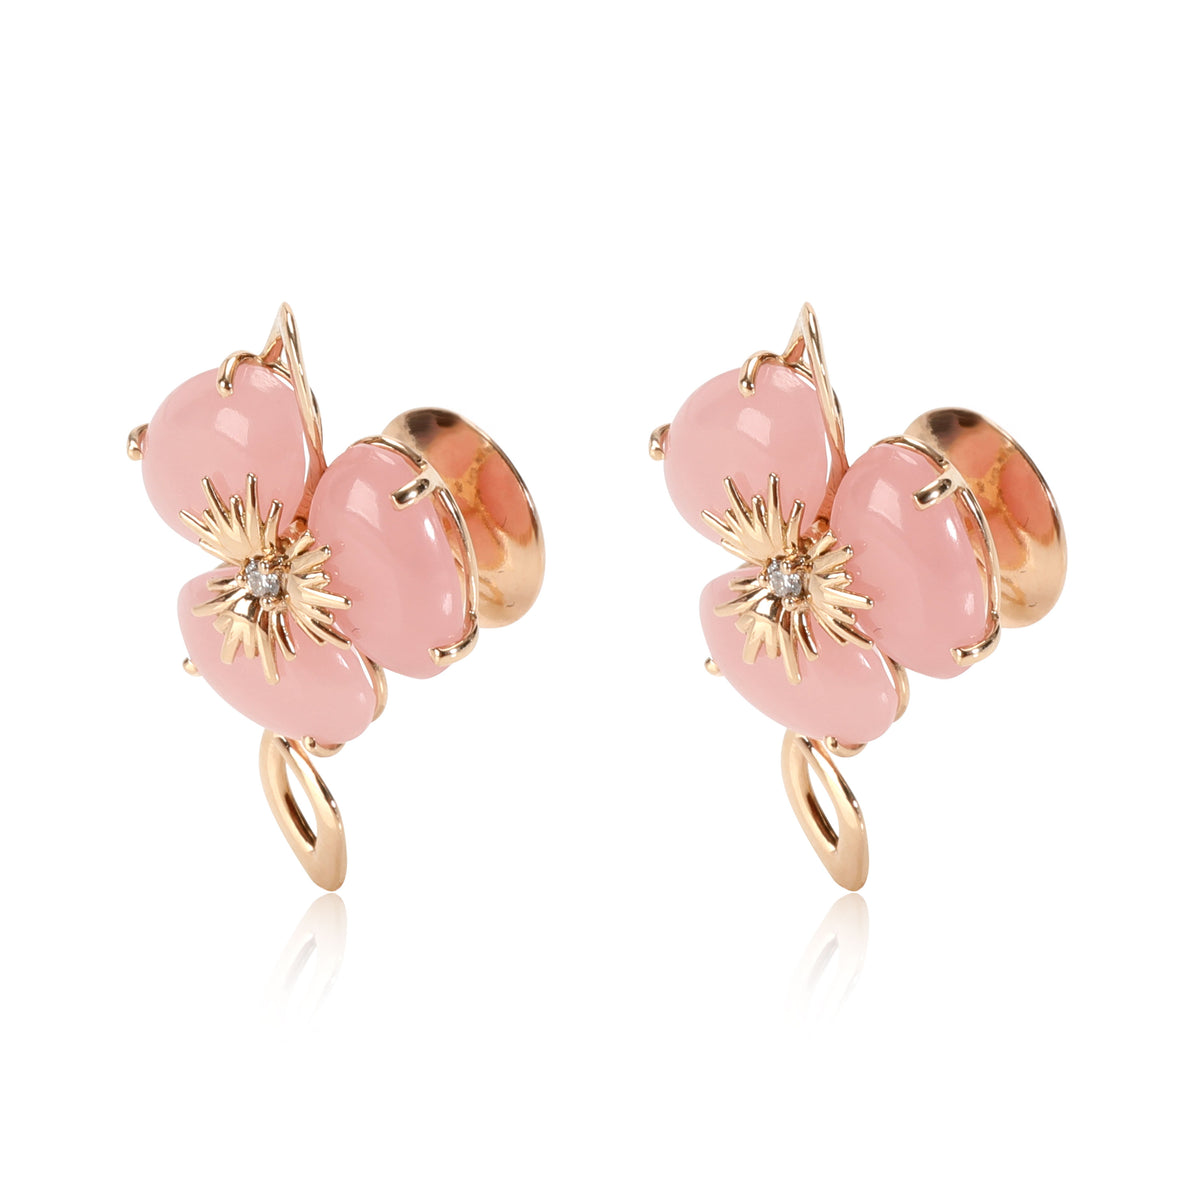 Vianna Brasil Malva Quartz & Diamond Flower Earrings in 18K Rose Gold